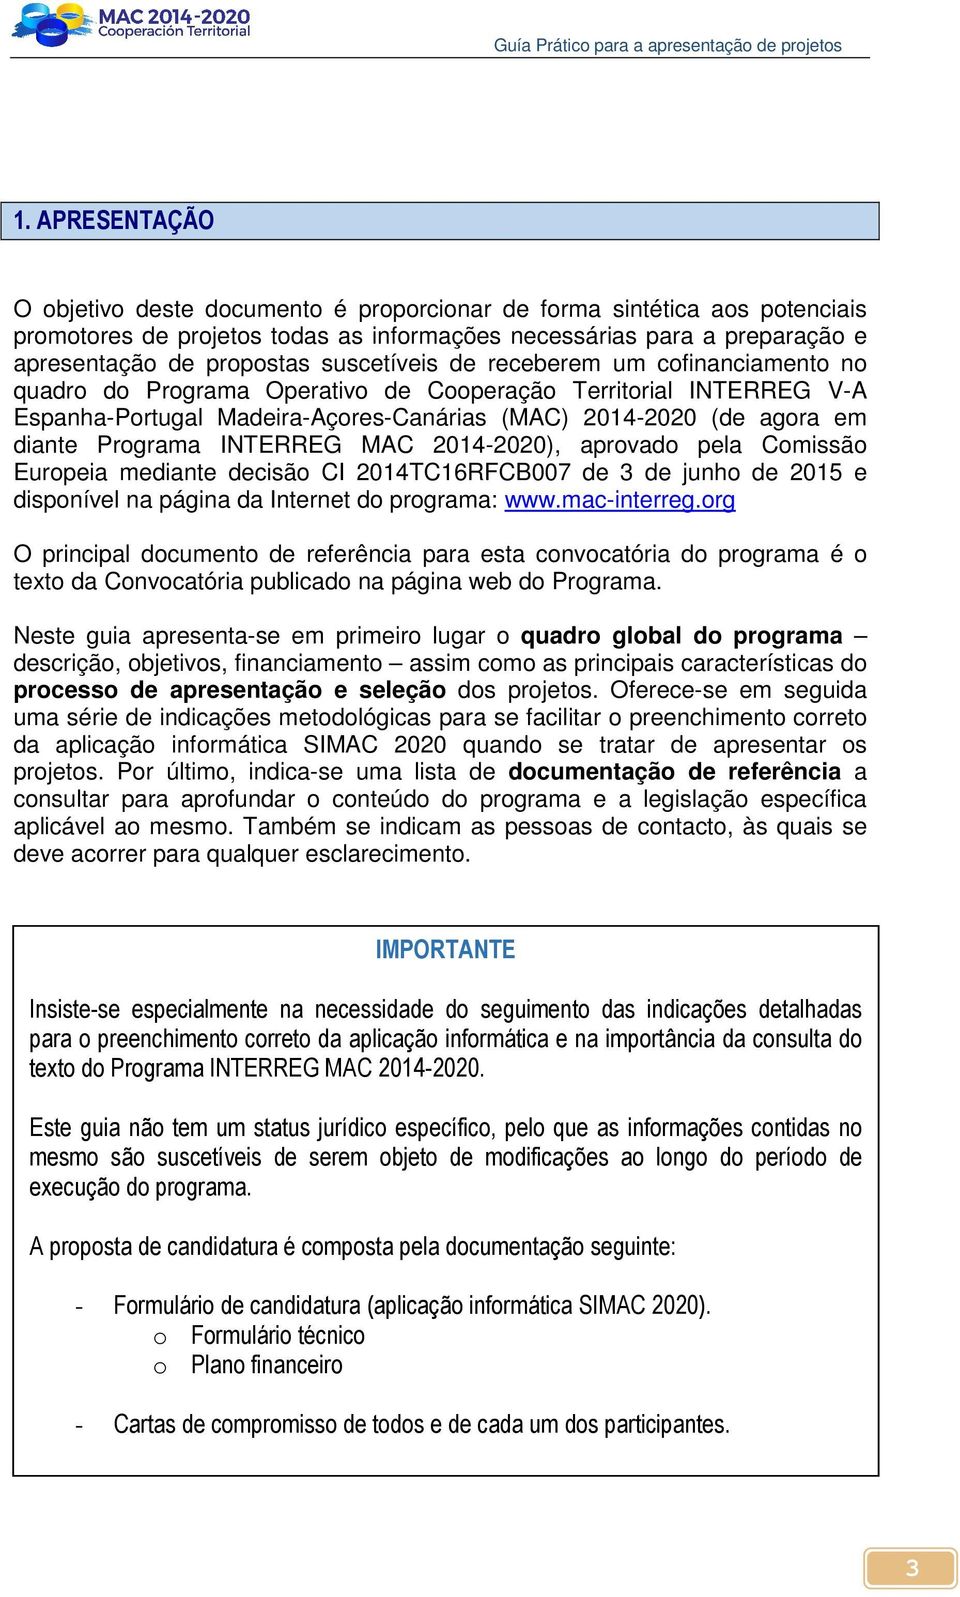 Programa INTERREG MAC 2014-2020), aprovado pela Comissão Europeia mediante decisão CI 2014TC16RFCB007 de 3 de junho de 2015 e disponível na página da Internet do programa: www.mac-interreg.